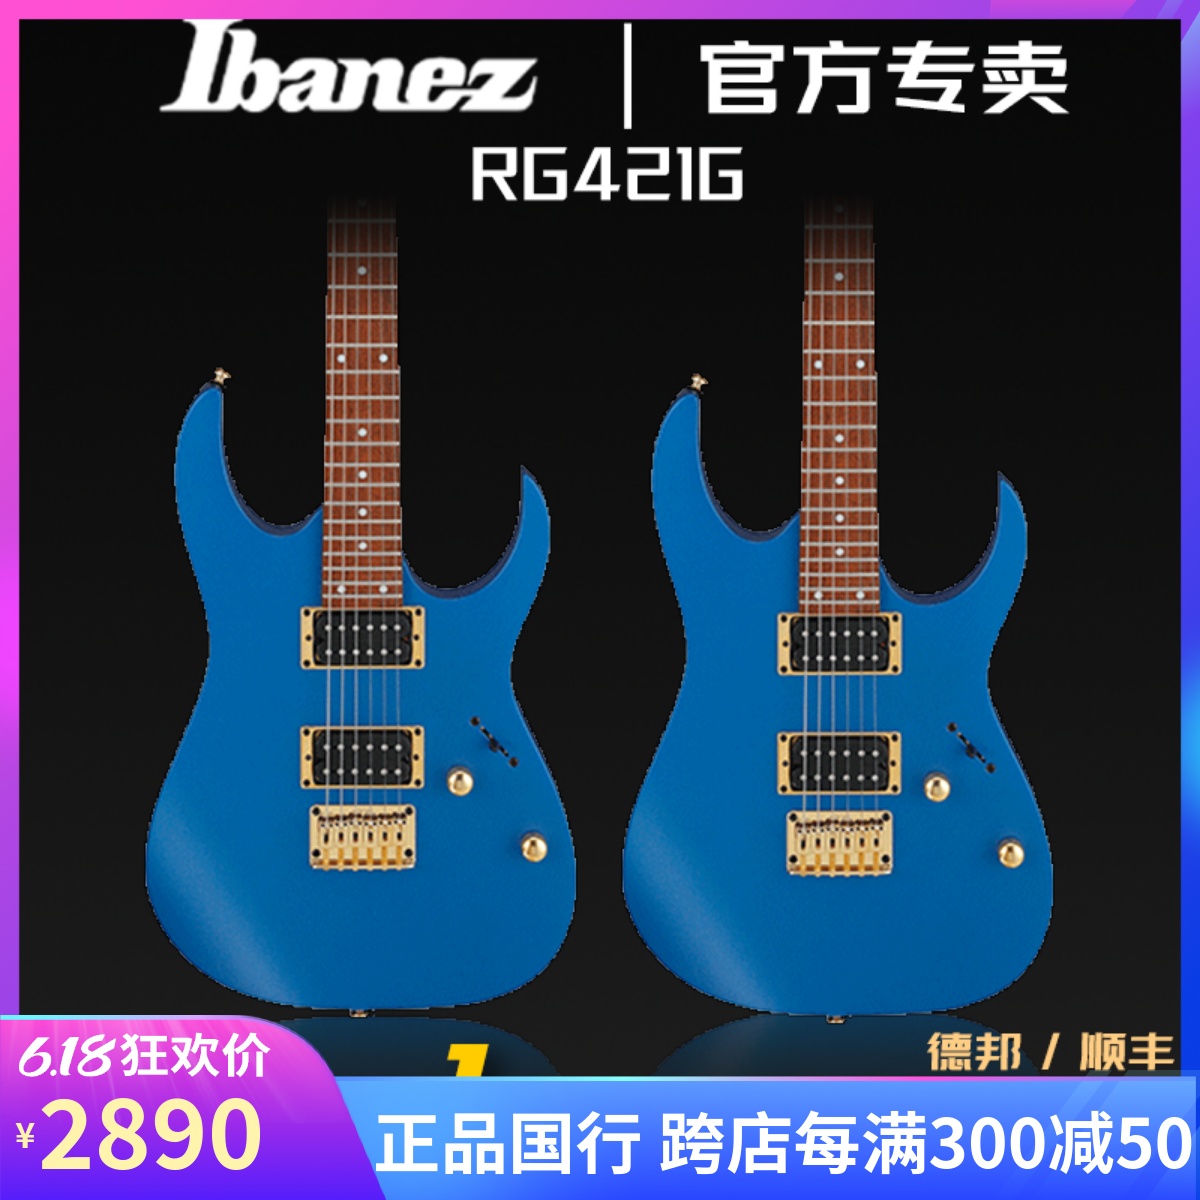 正品日本Ibanez依班娜电吉他RG421G固定弦桥电吉他套装印尼产